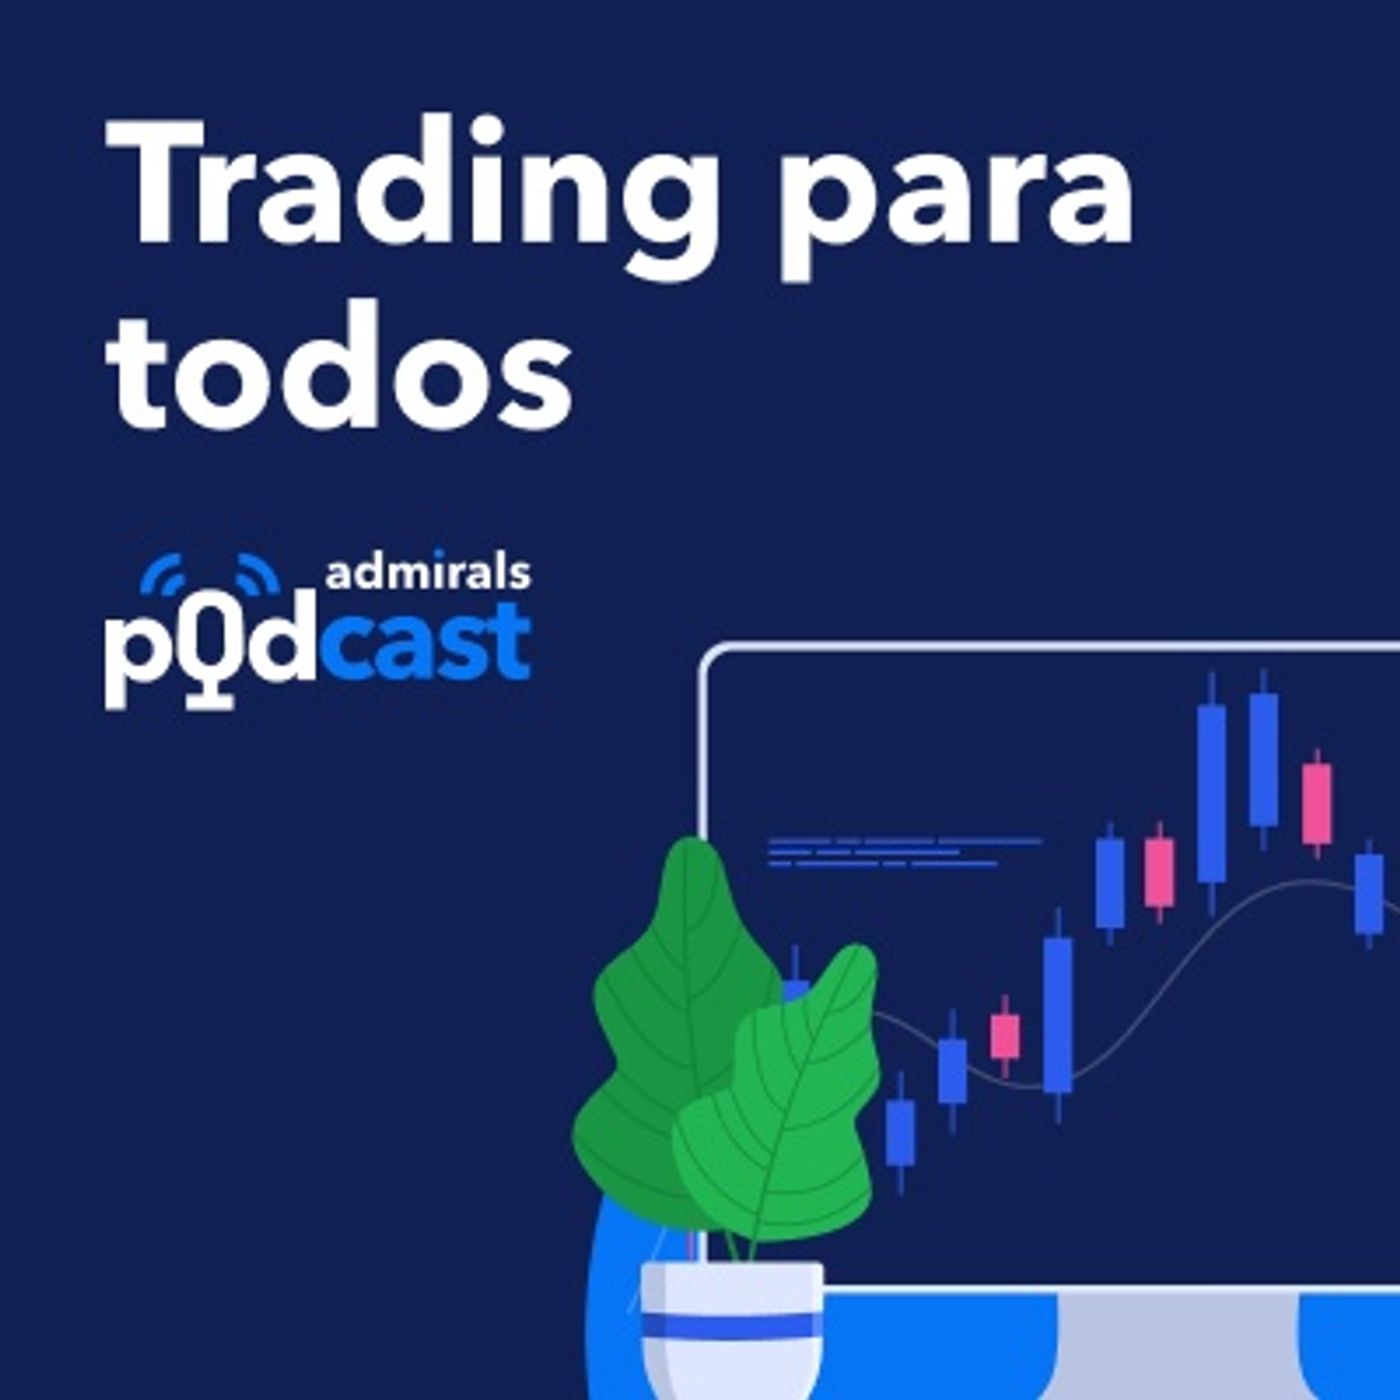 Episodio 5: Charlando de trading con Javier Plaza